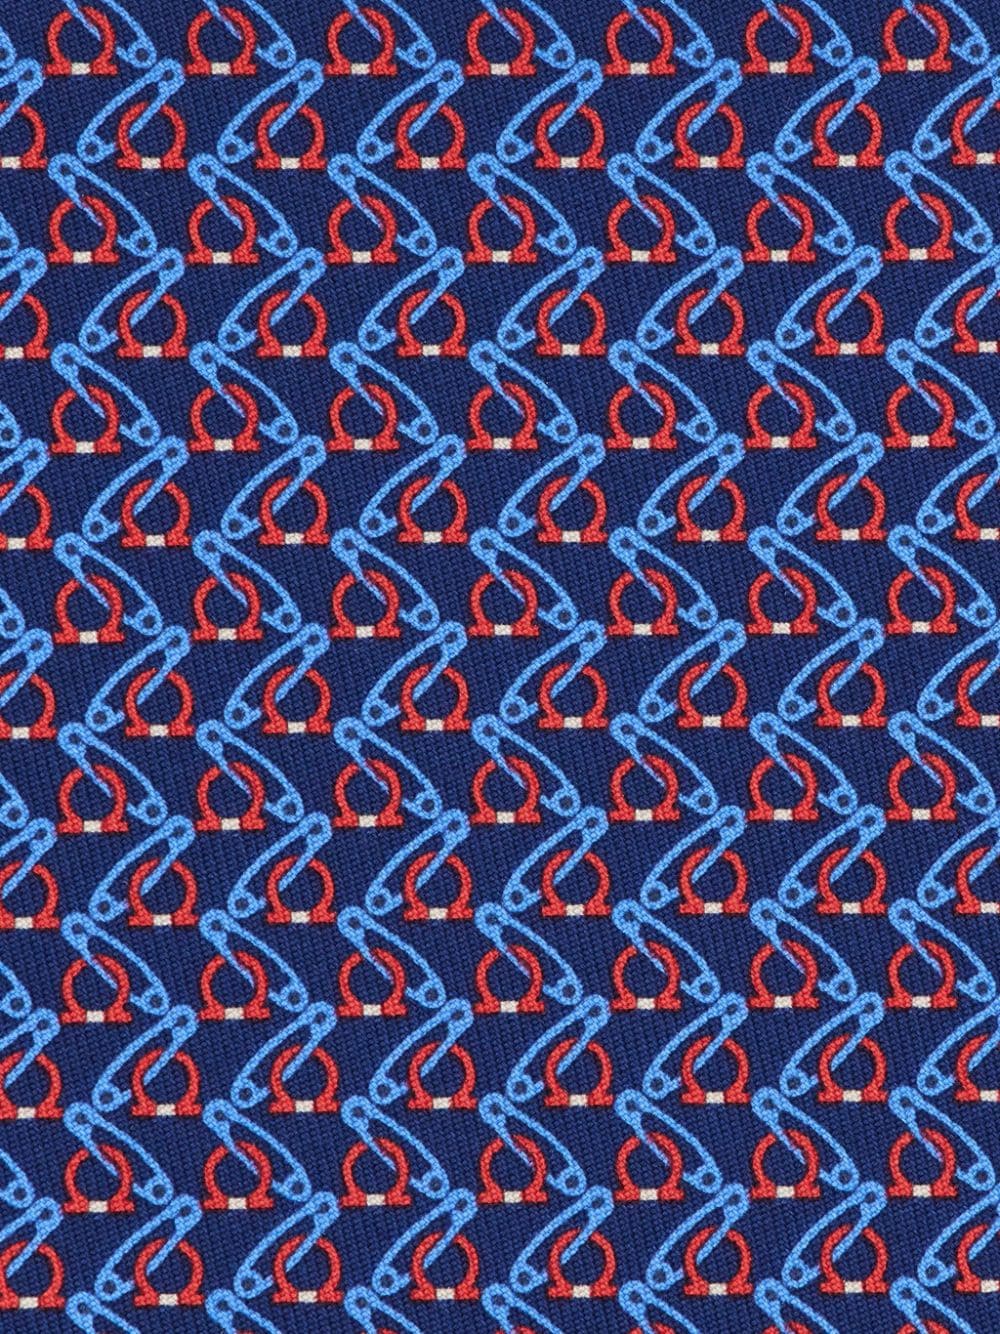 Shop Ferragamo Graphic-print Silk Tie In Blue